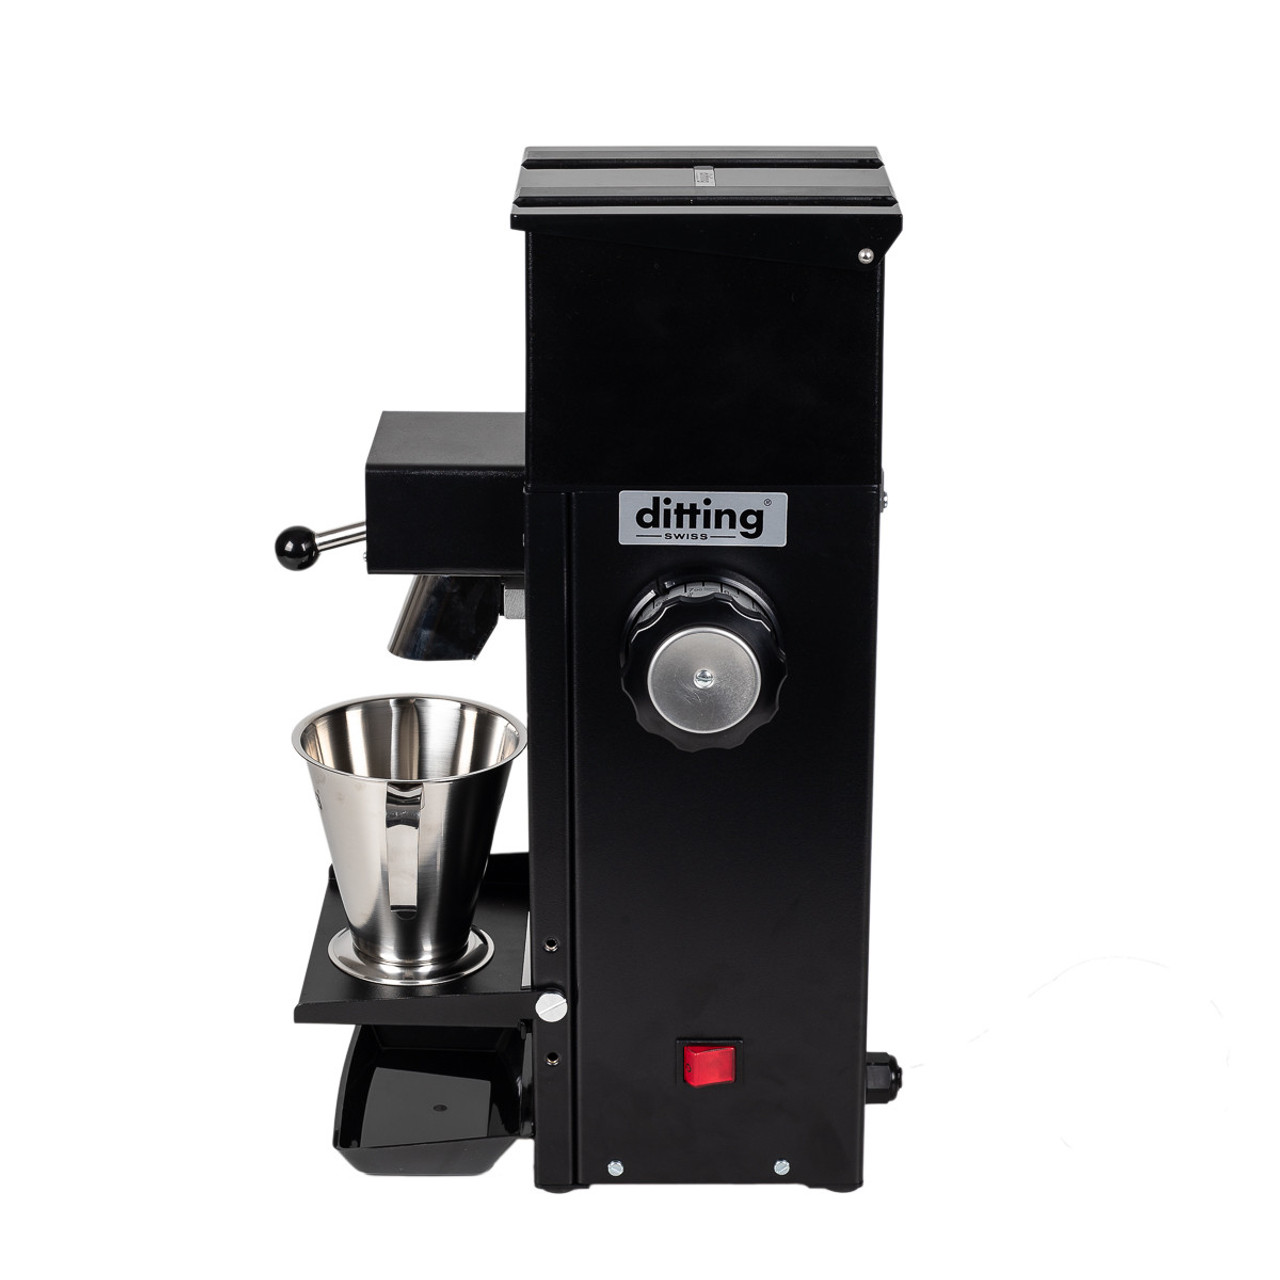 ditting ディッティング KR-804 コーヒーグラインダー コーヒーミル 